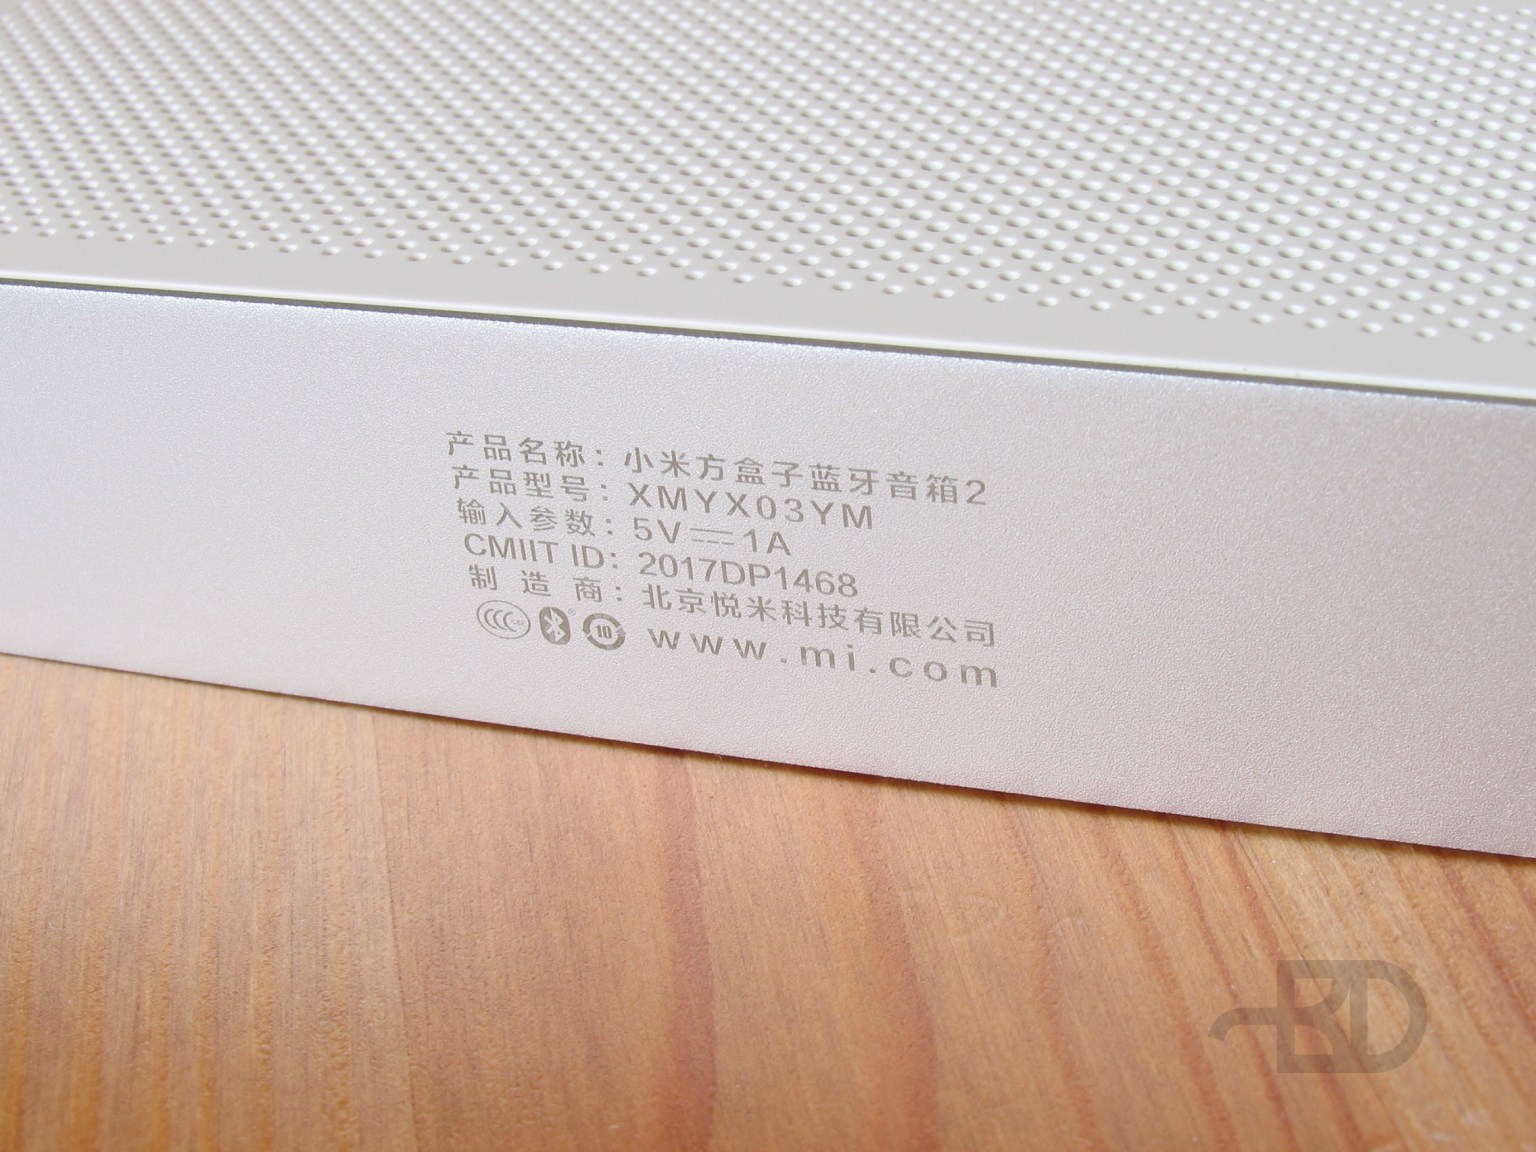 Bluetooth-колонка Xiaomi Mi Speaker 2 (XMYX03YM)